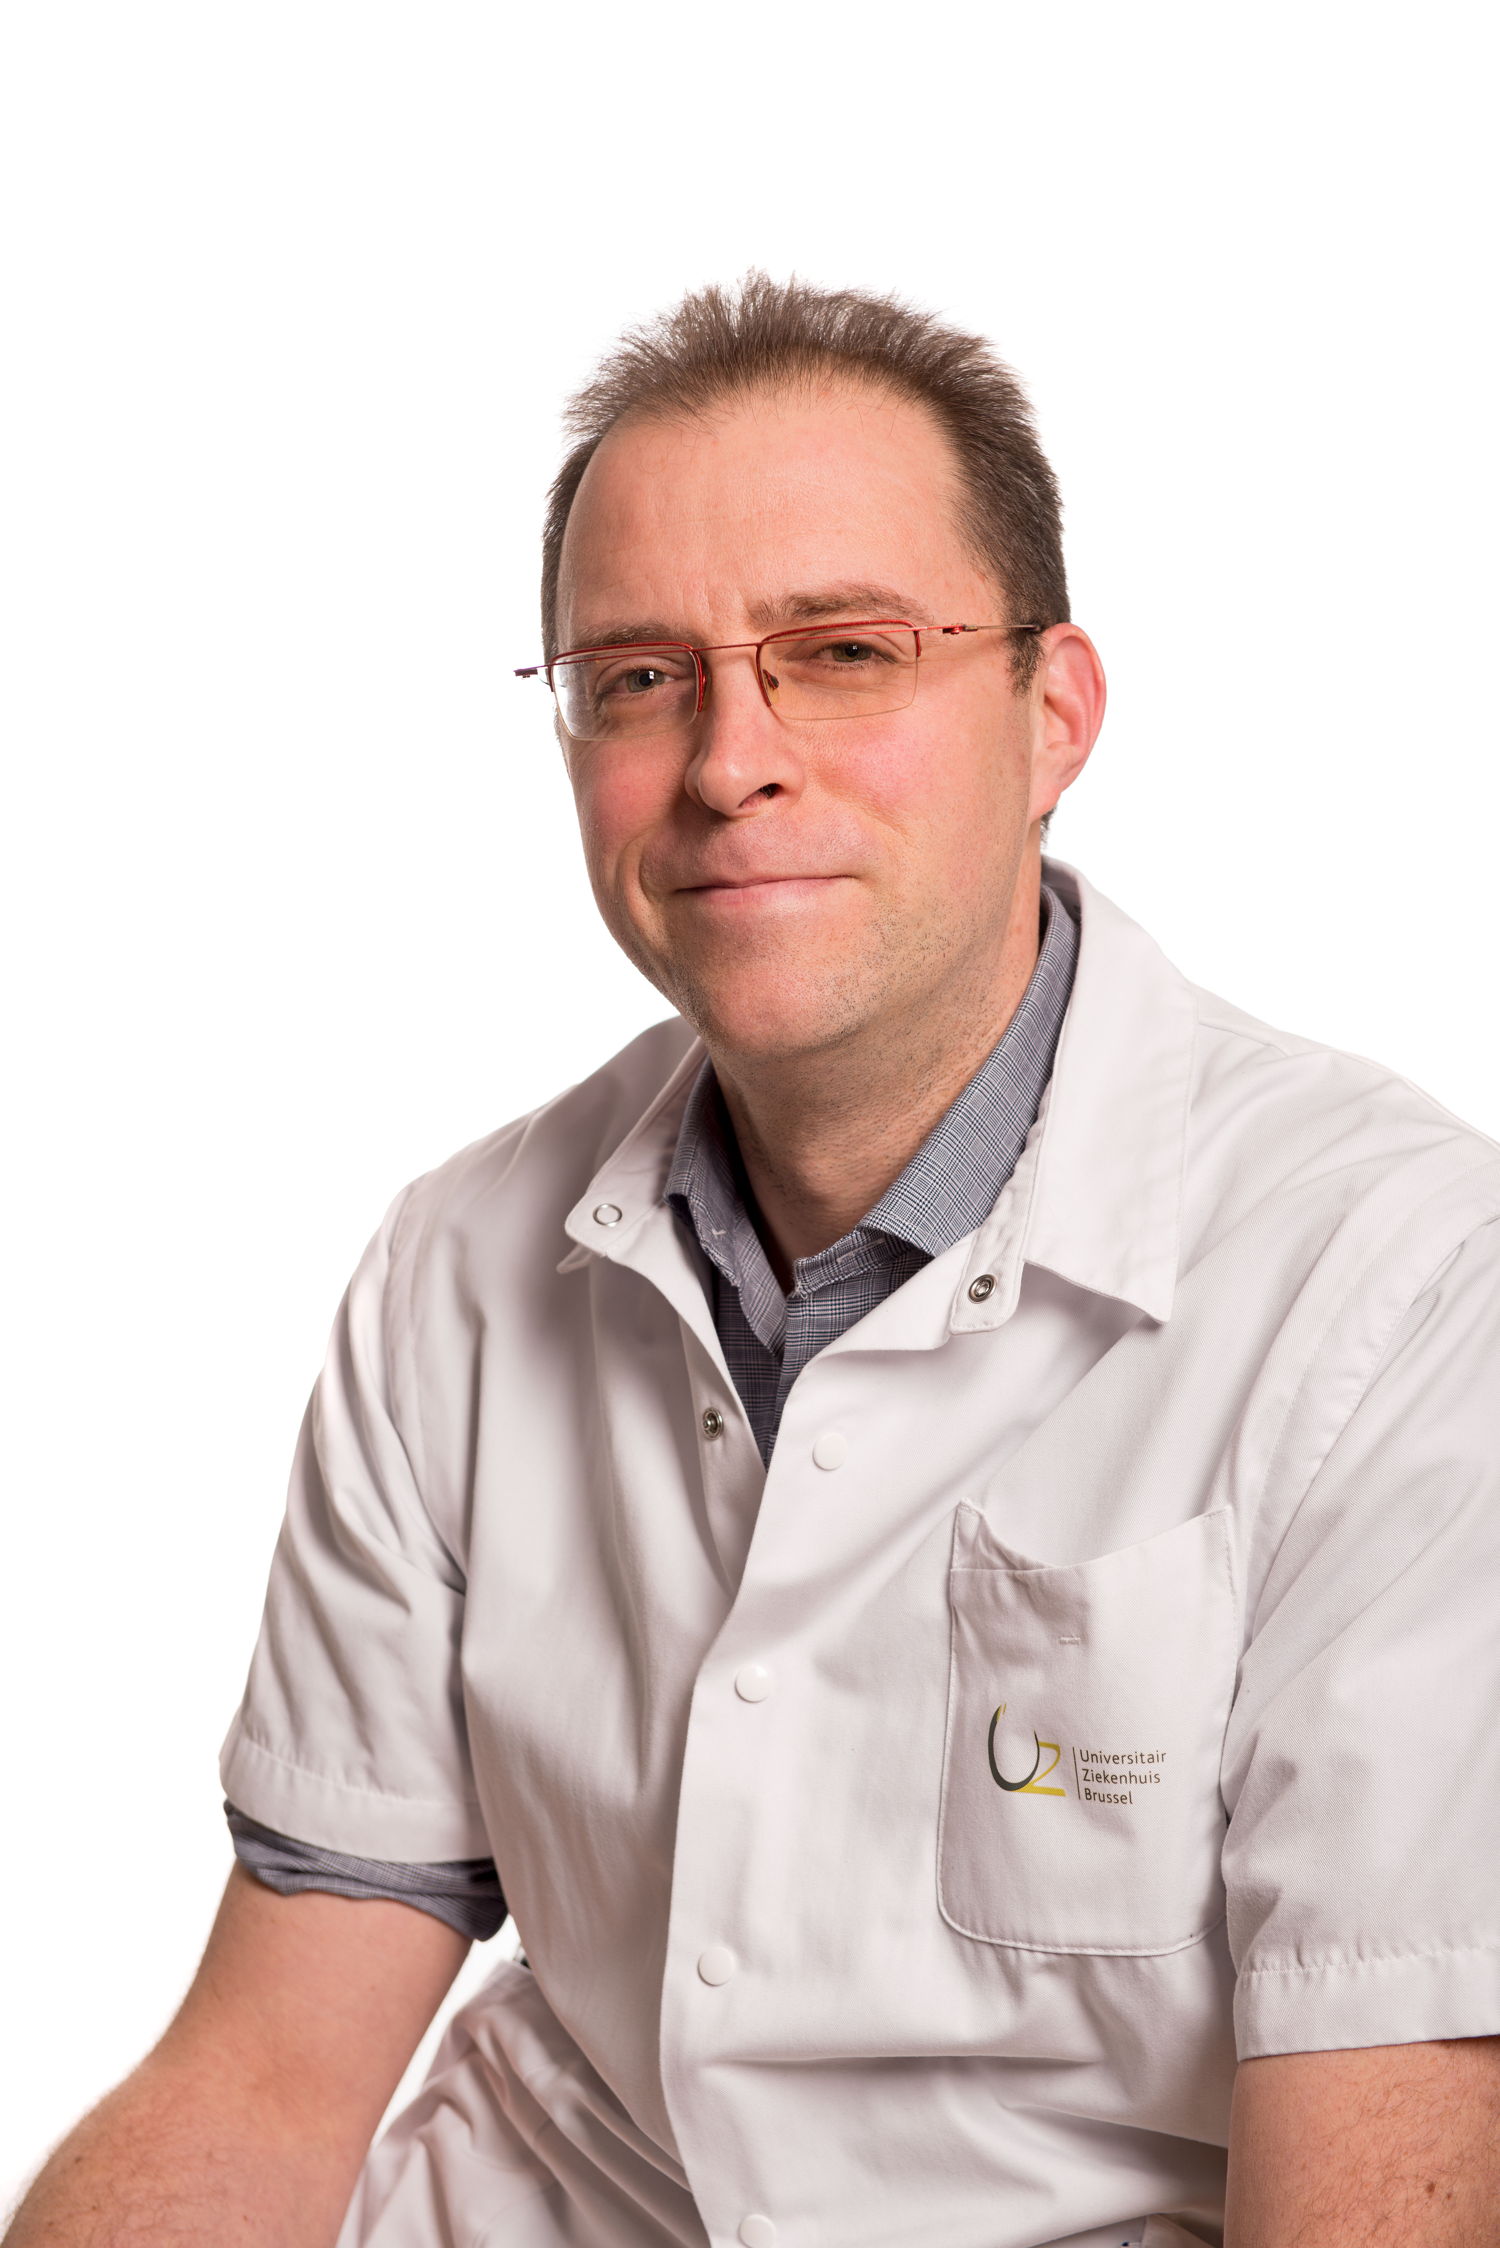 Prof. Mark De Ridder, coördinator van het oncologisch zorgprogramma en diensthoofd Radiotherapie in het UZ Brussel